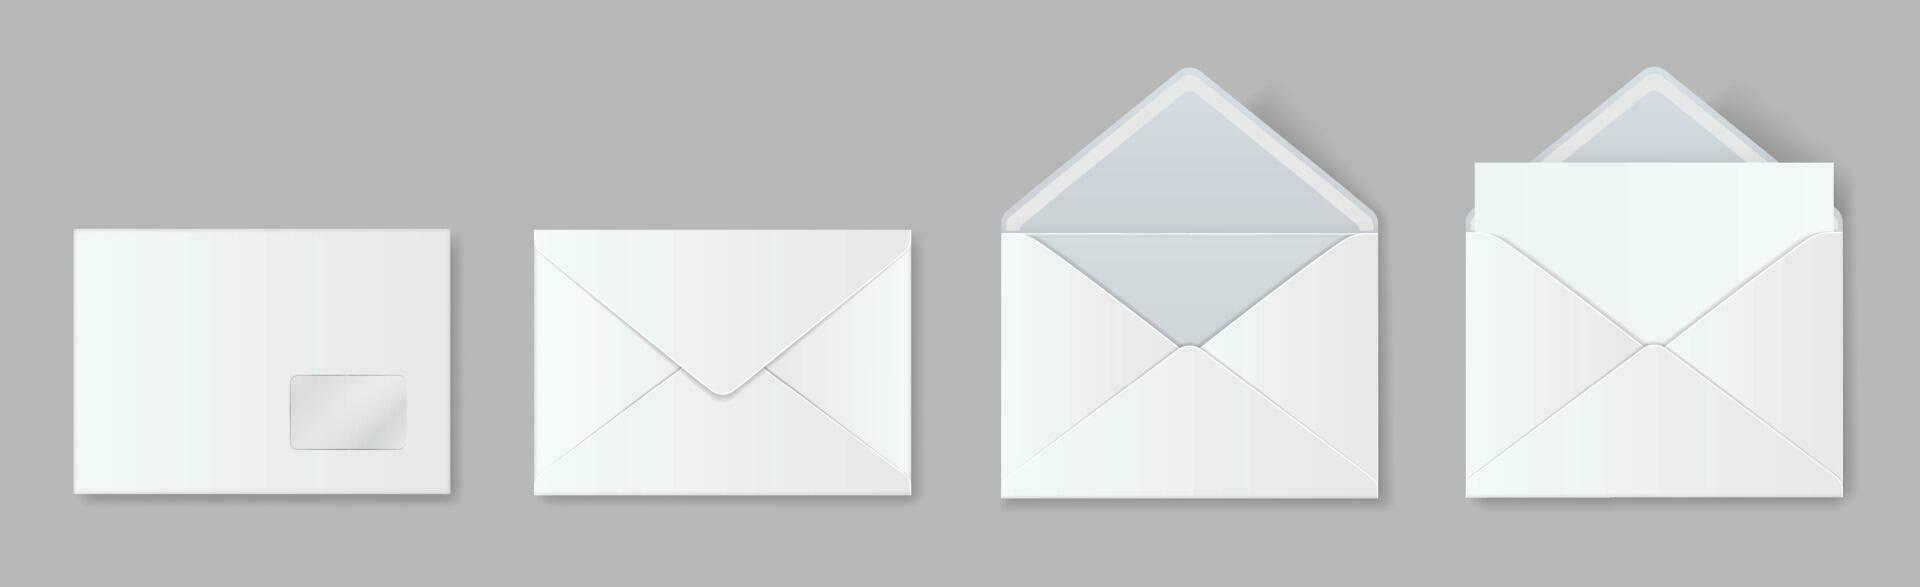 realista blanco blanco sobre Bosquejo, abierto y cerrado sobres postal letra invitación, papel correo modelo frente y espalda ver vector conjunto